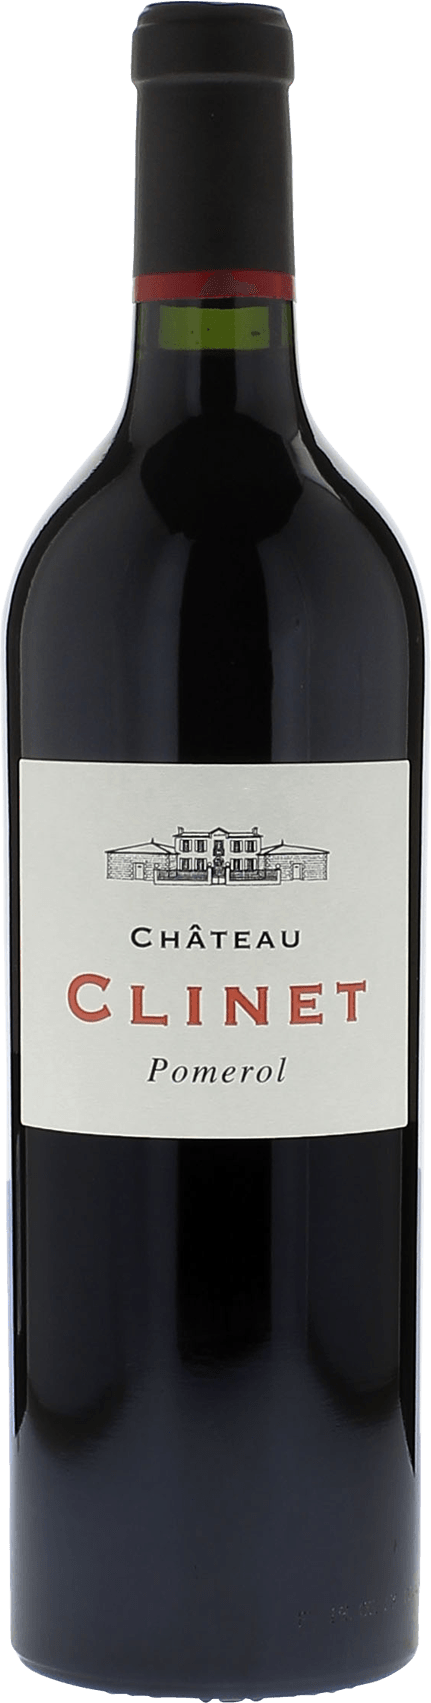 Clinet 1970  Pomerol, Bordeaux rouge